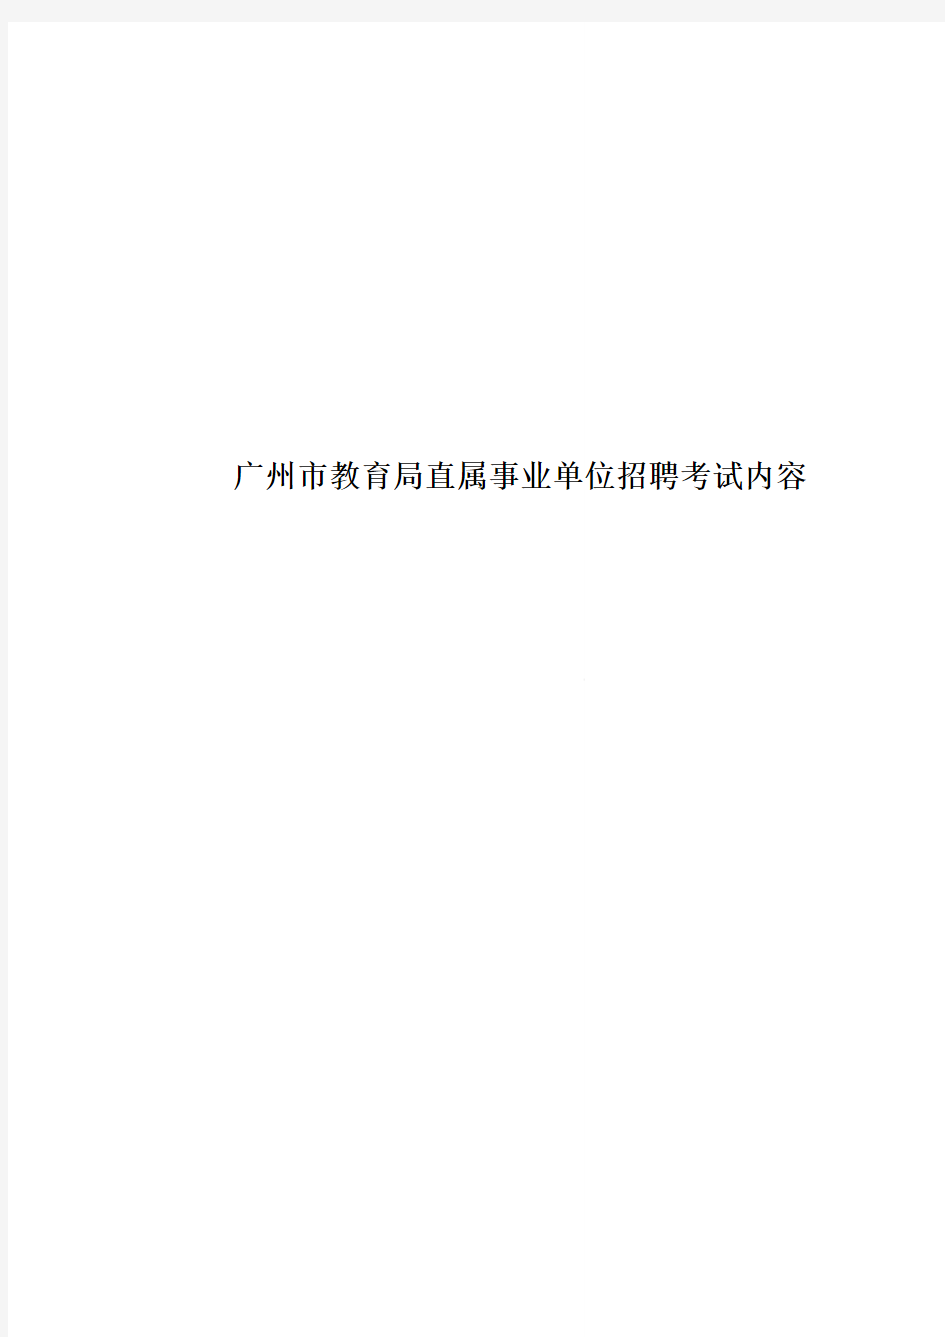 广州市教育局直属事业单位招聘考试内容